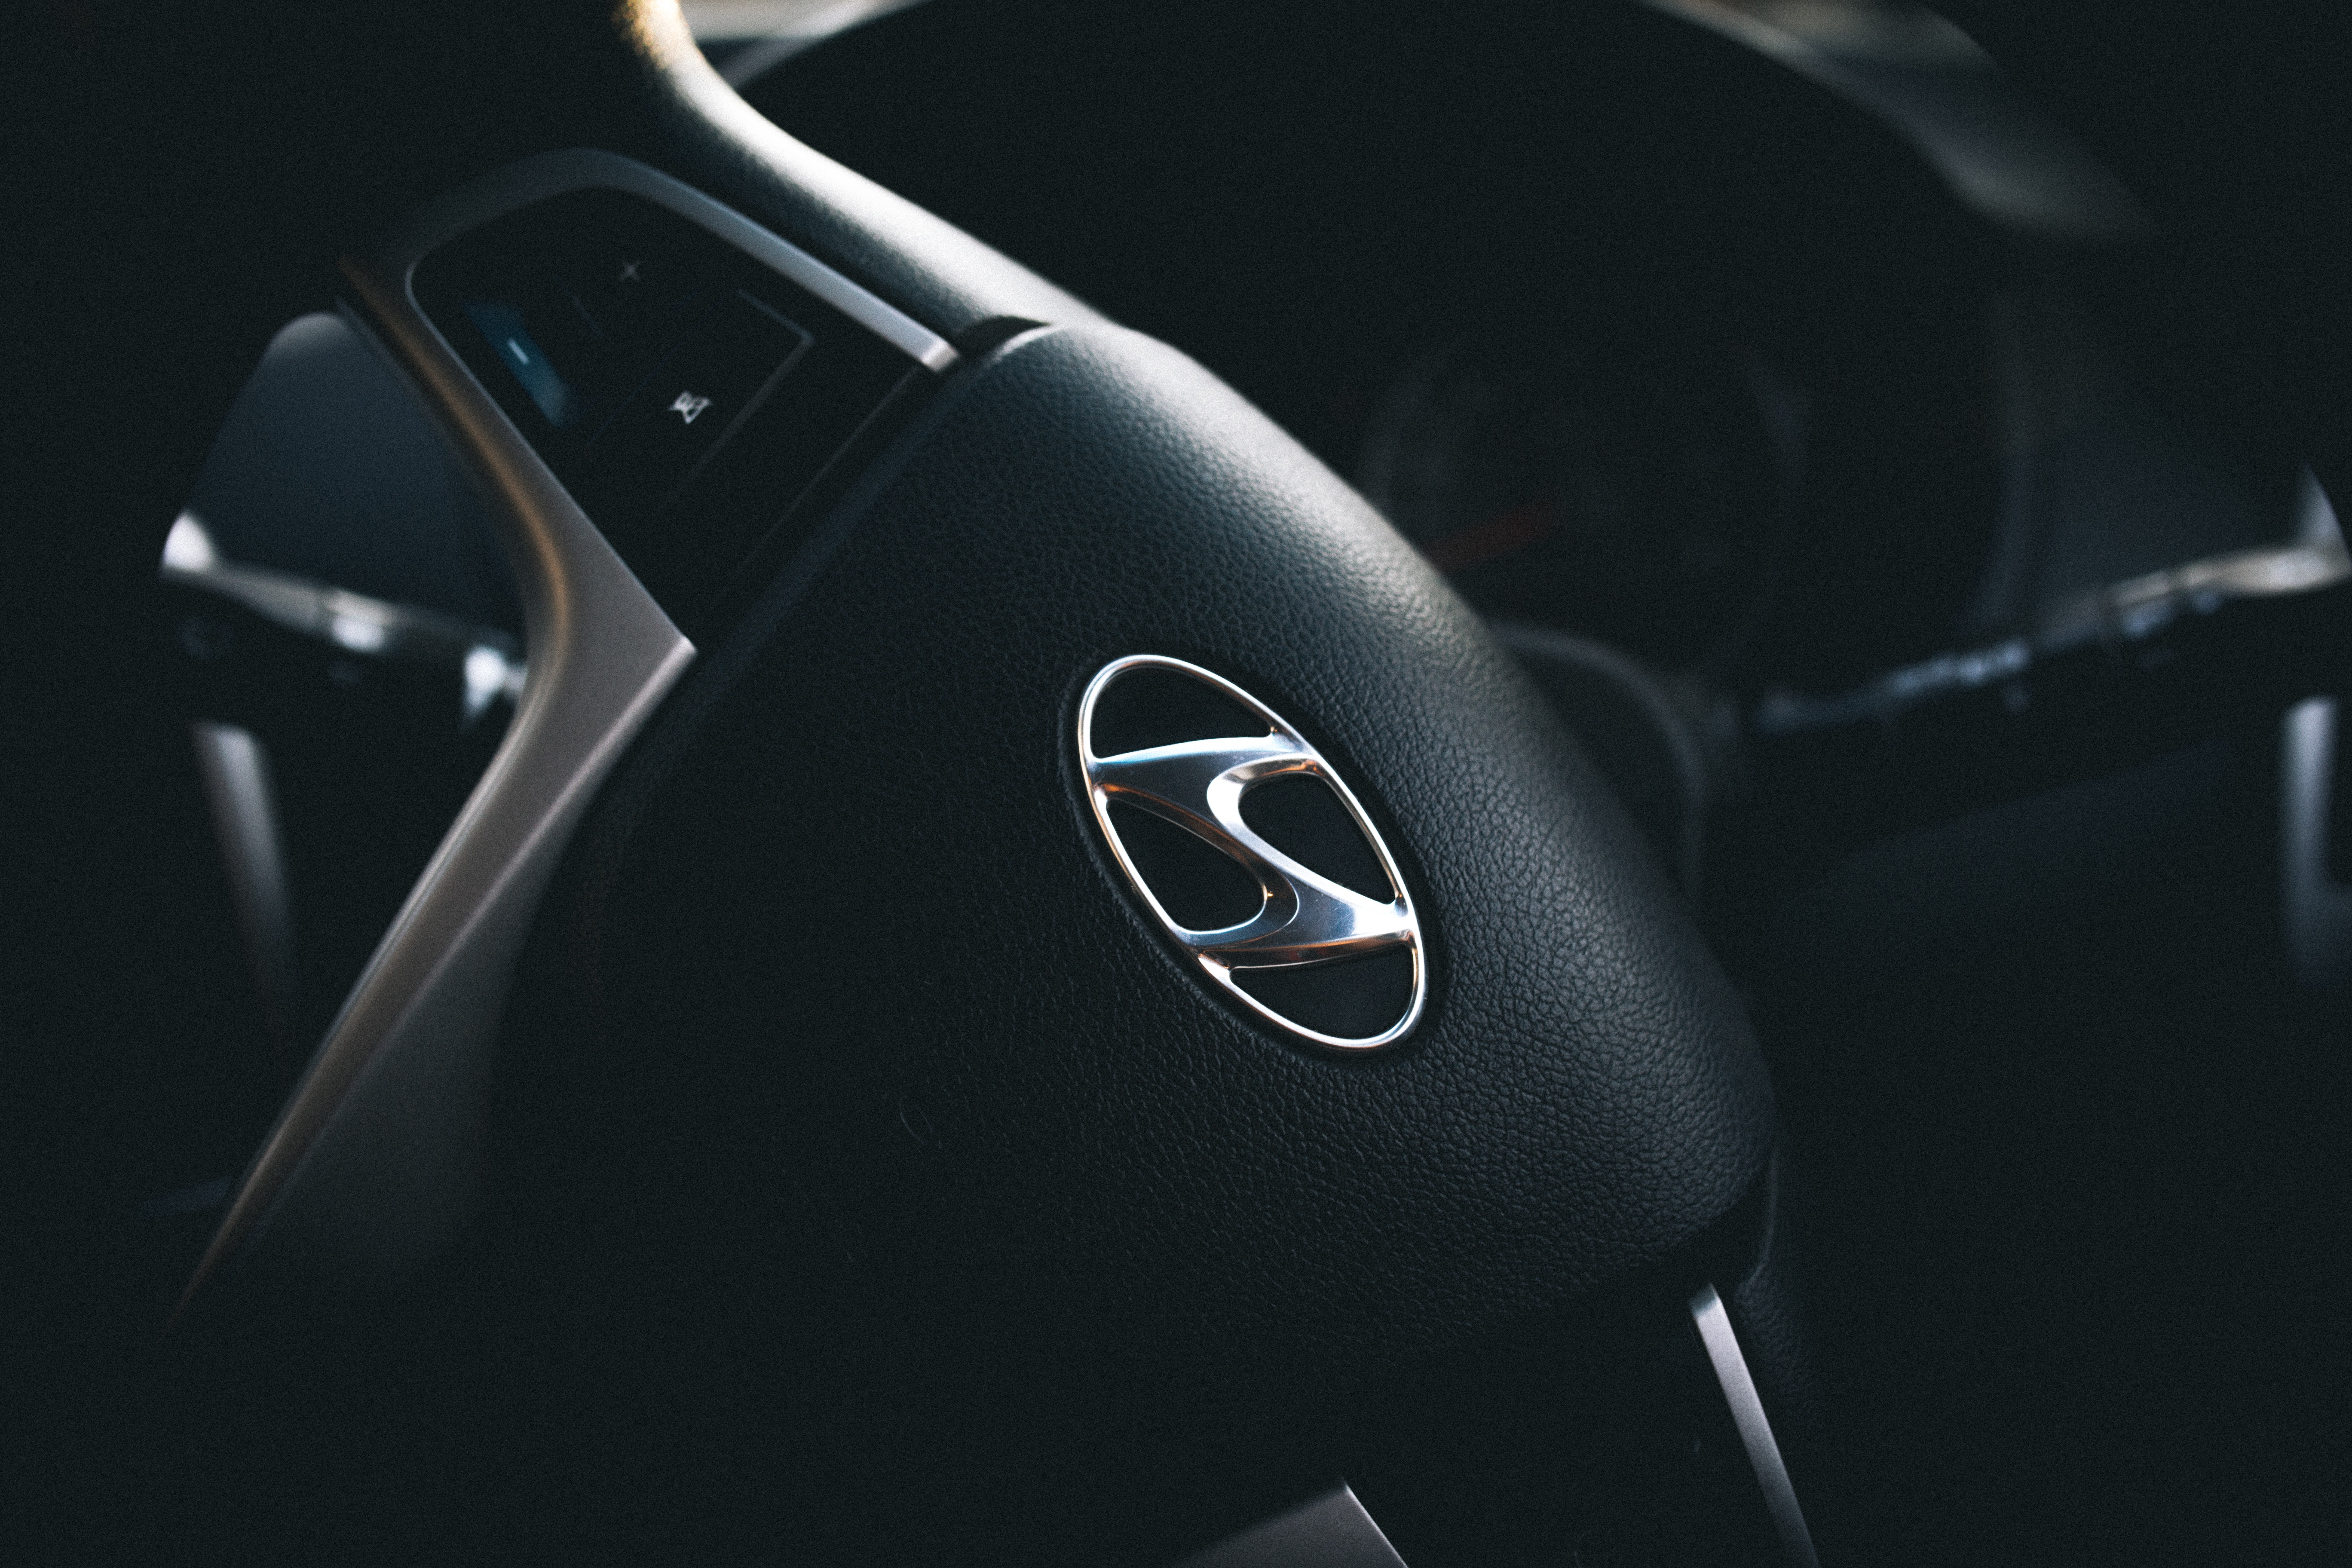 hyundai, logotype, rudder, cars, steering wheel, logo 1080p